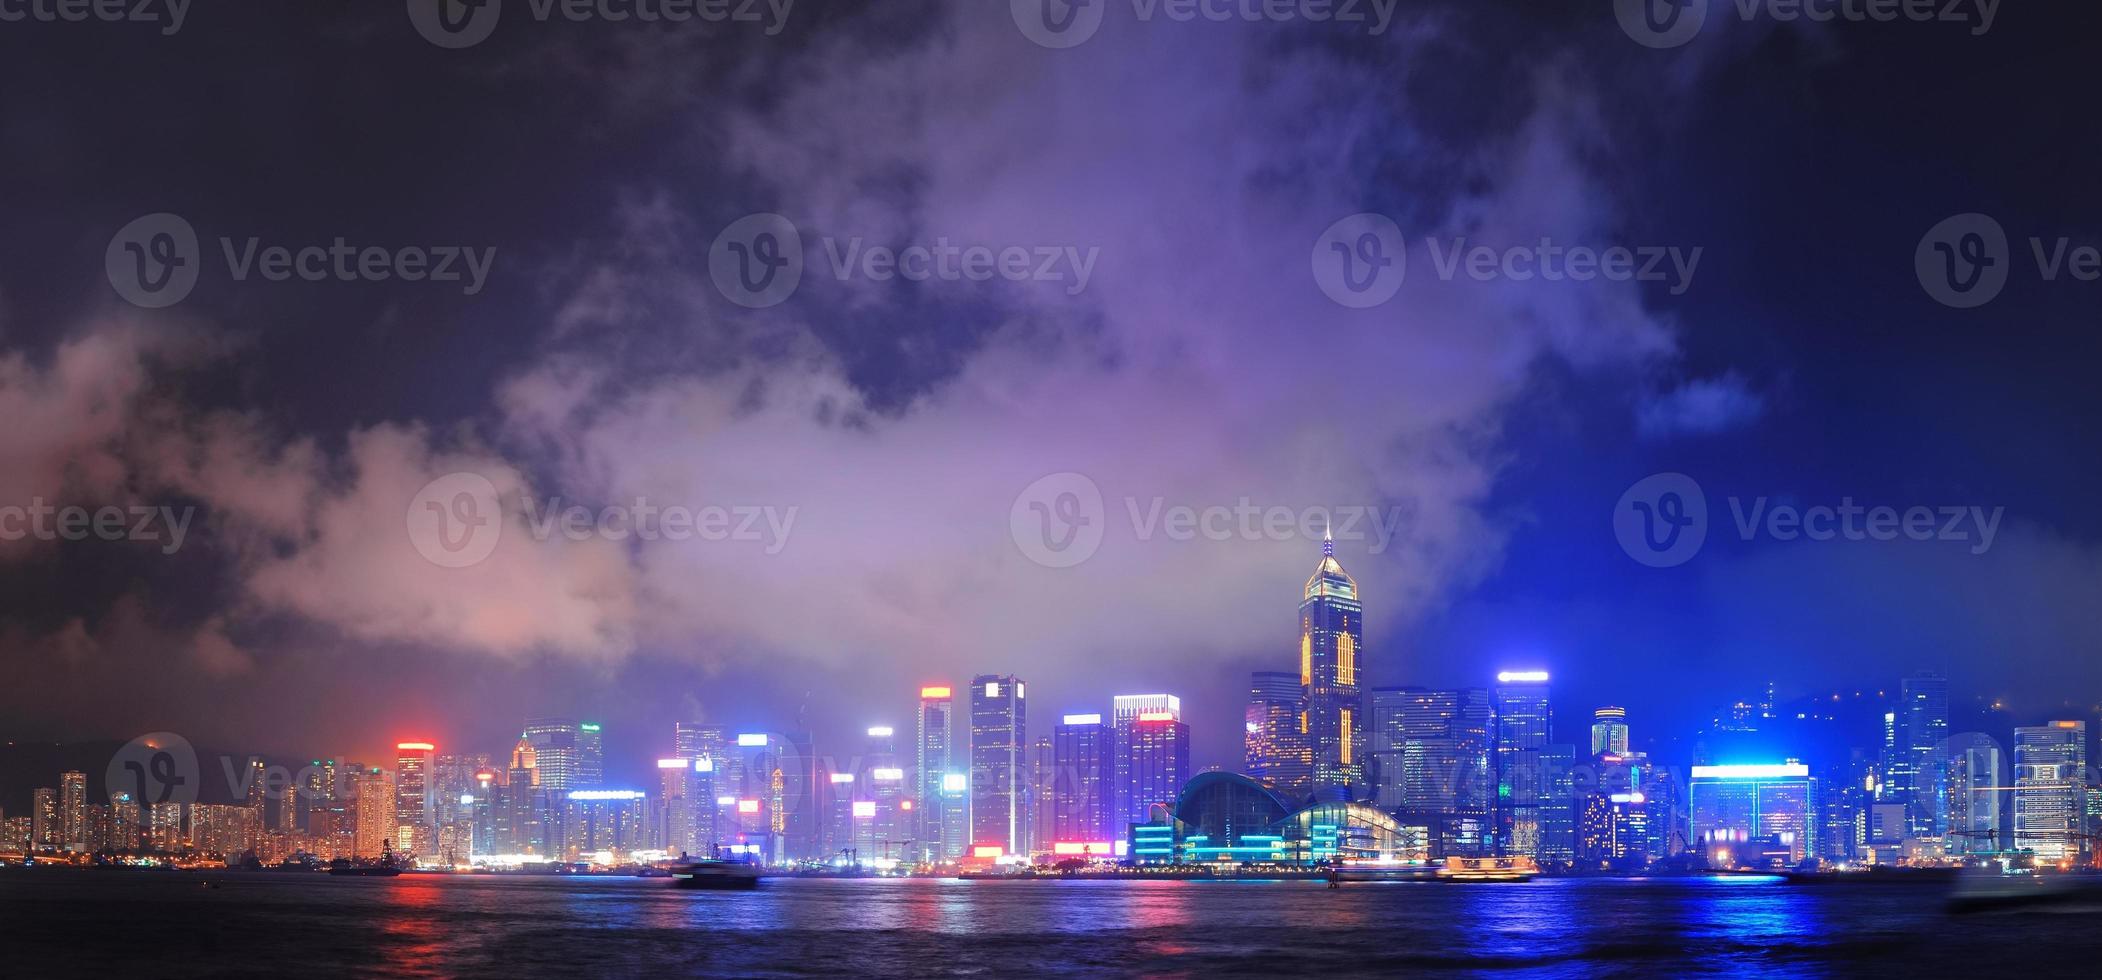 orizzonte di Hong Kong foto